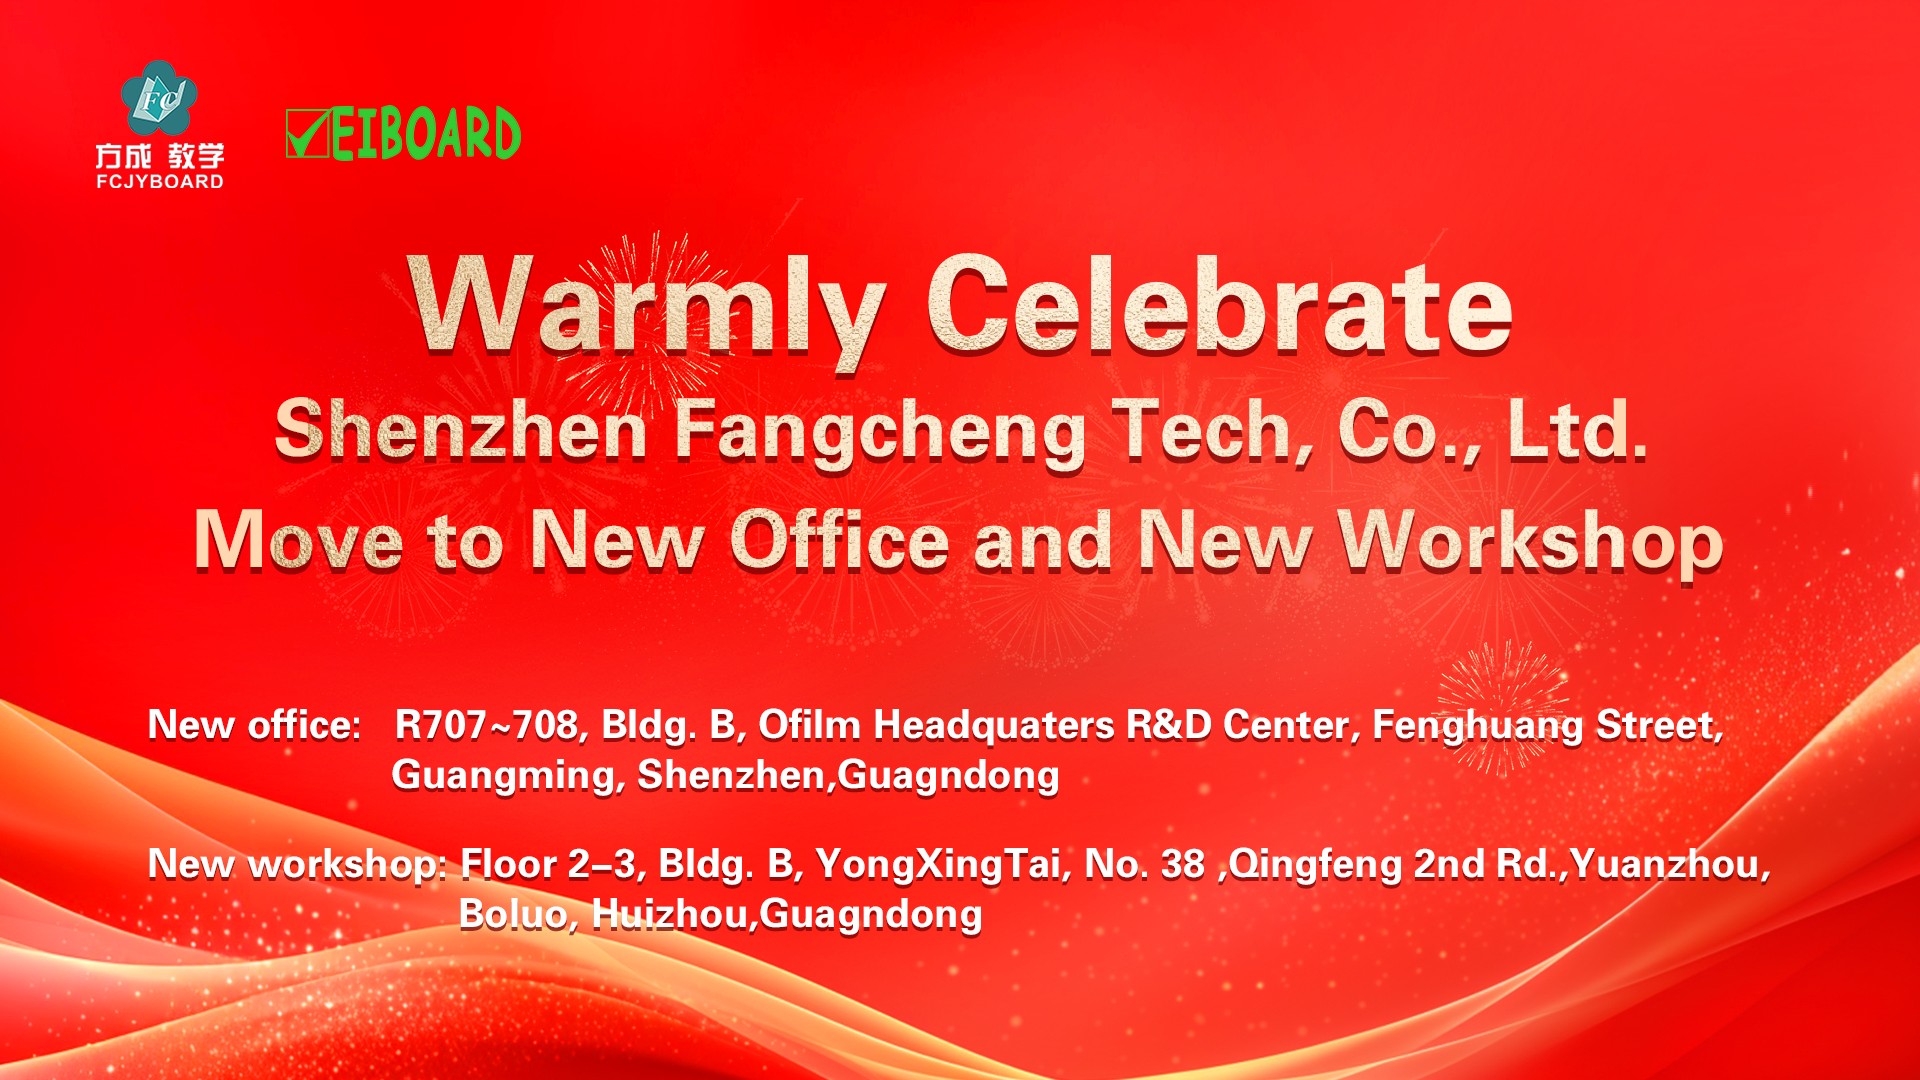 සීමාසහිත Shenzhen Fangcheng Tech Co., උණුසුම් ලෙස සමරන්න. නව කාර්යාලයට සහ නව වැඩමුළුවට යන්න!